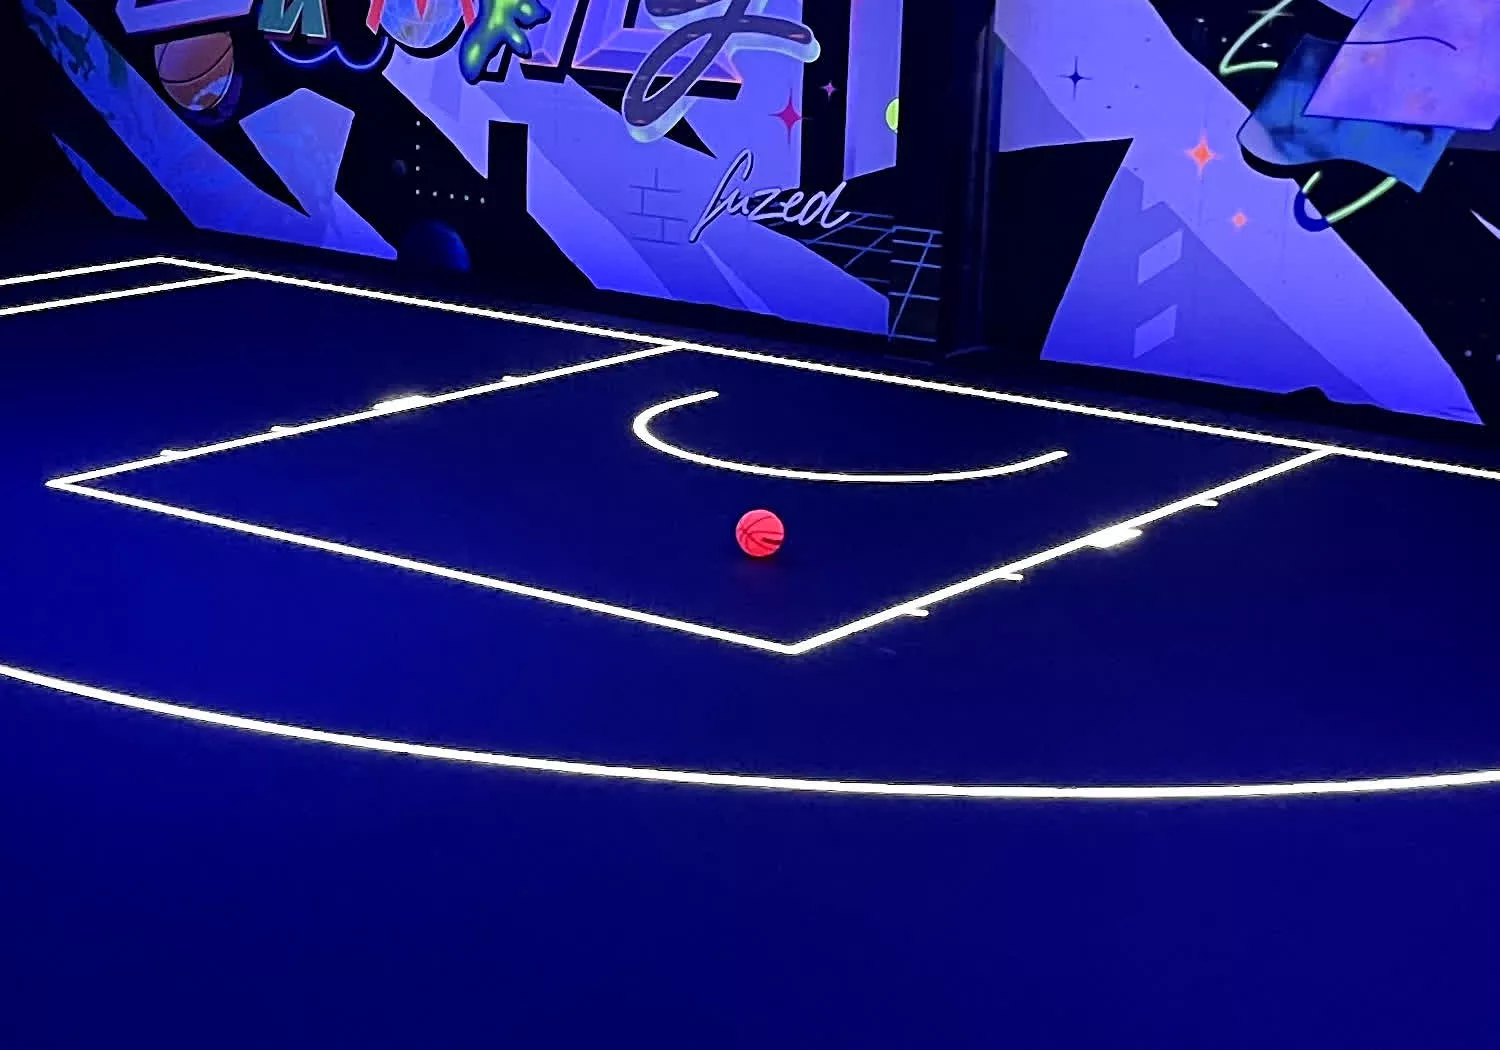 La cancha de baloncesto de cristal LED debutará en la NBA este mes y mostrará estadísticas y repeticiones